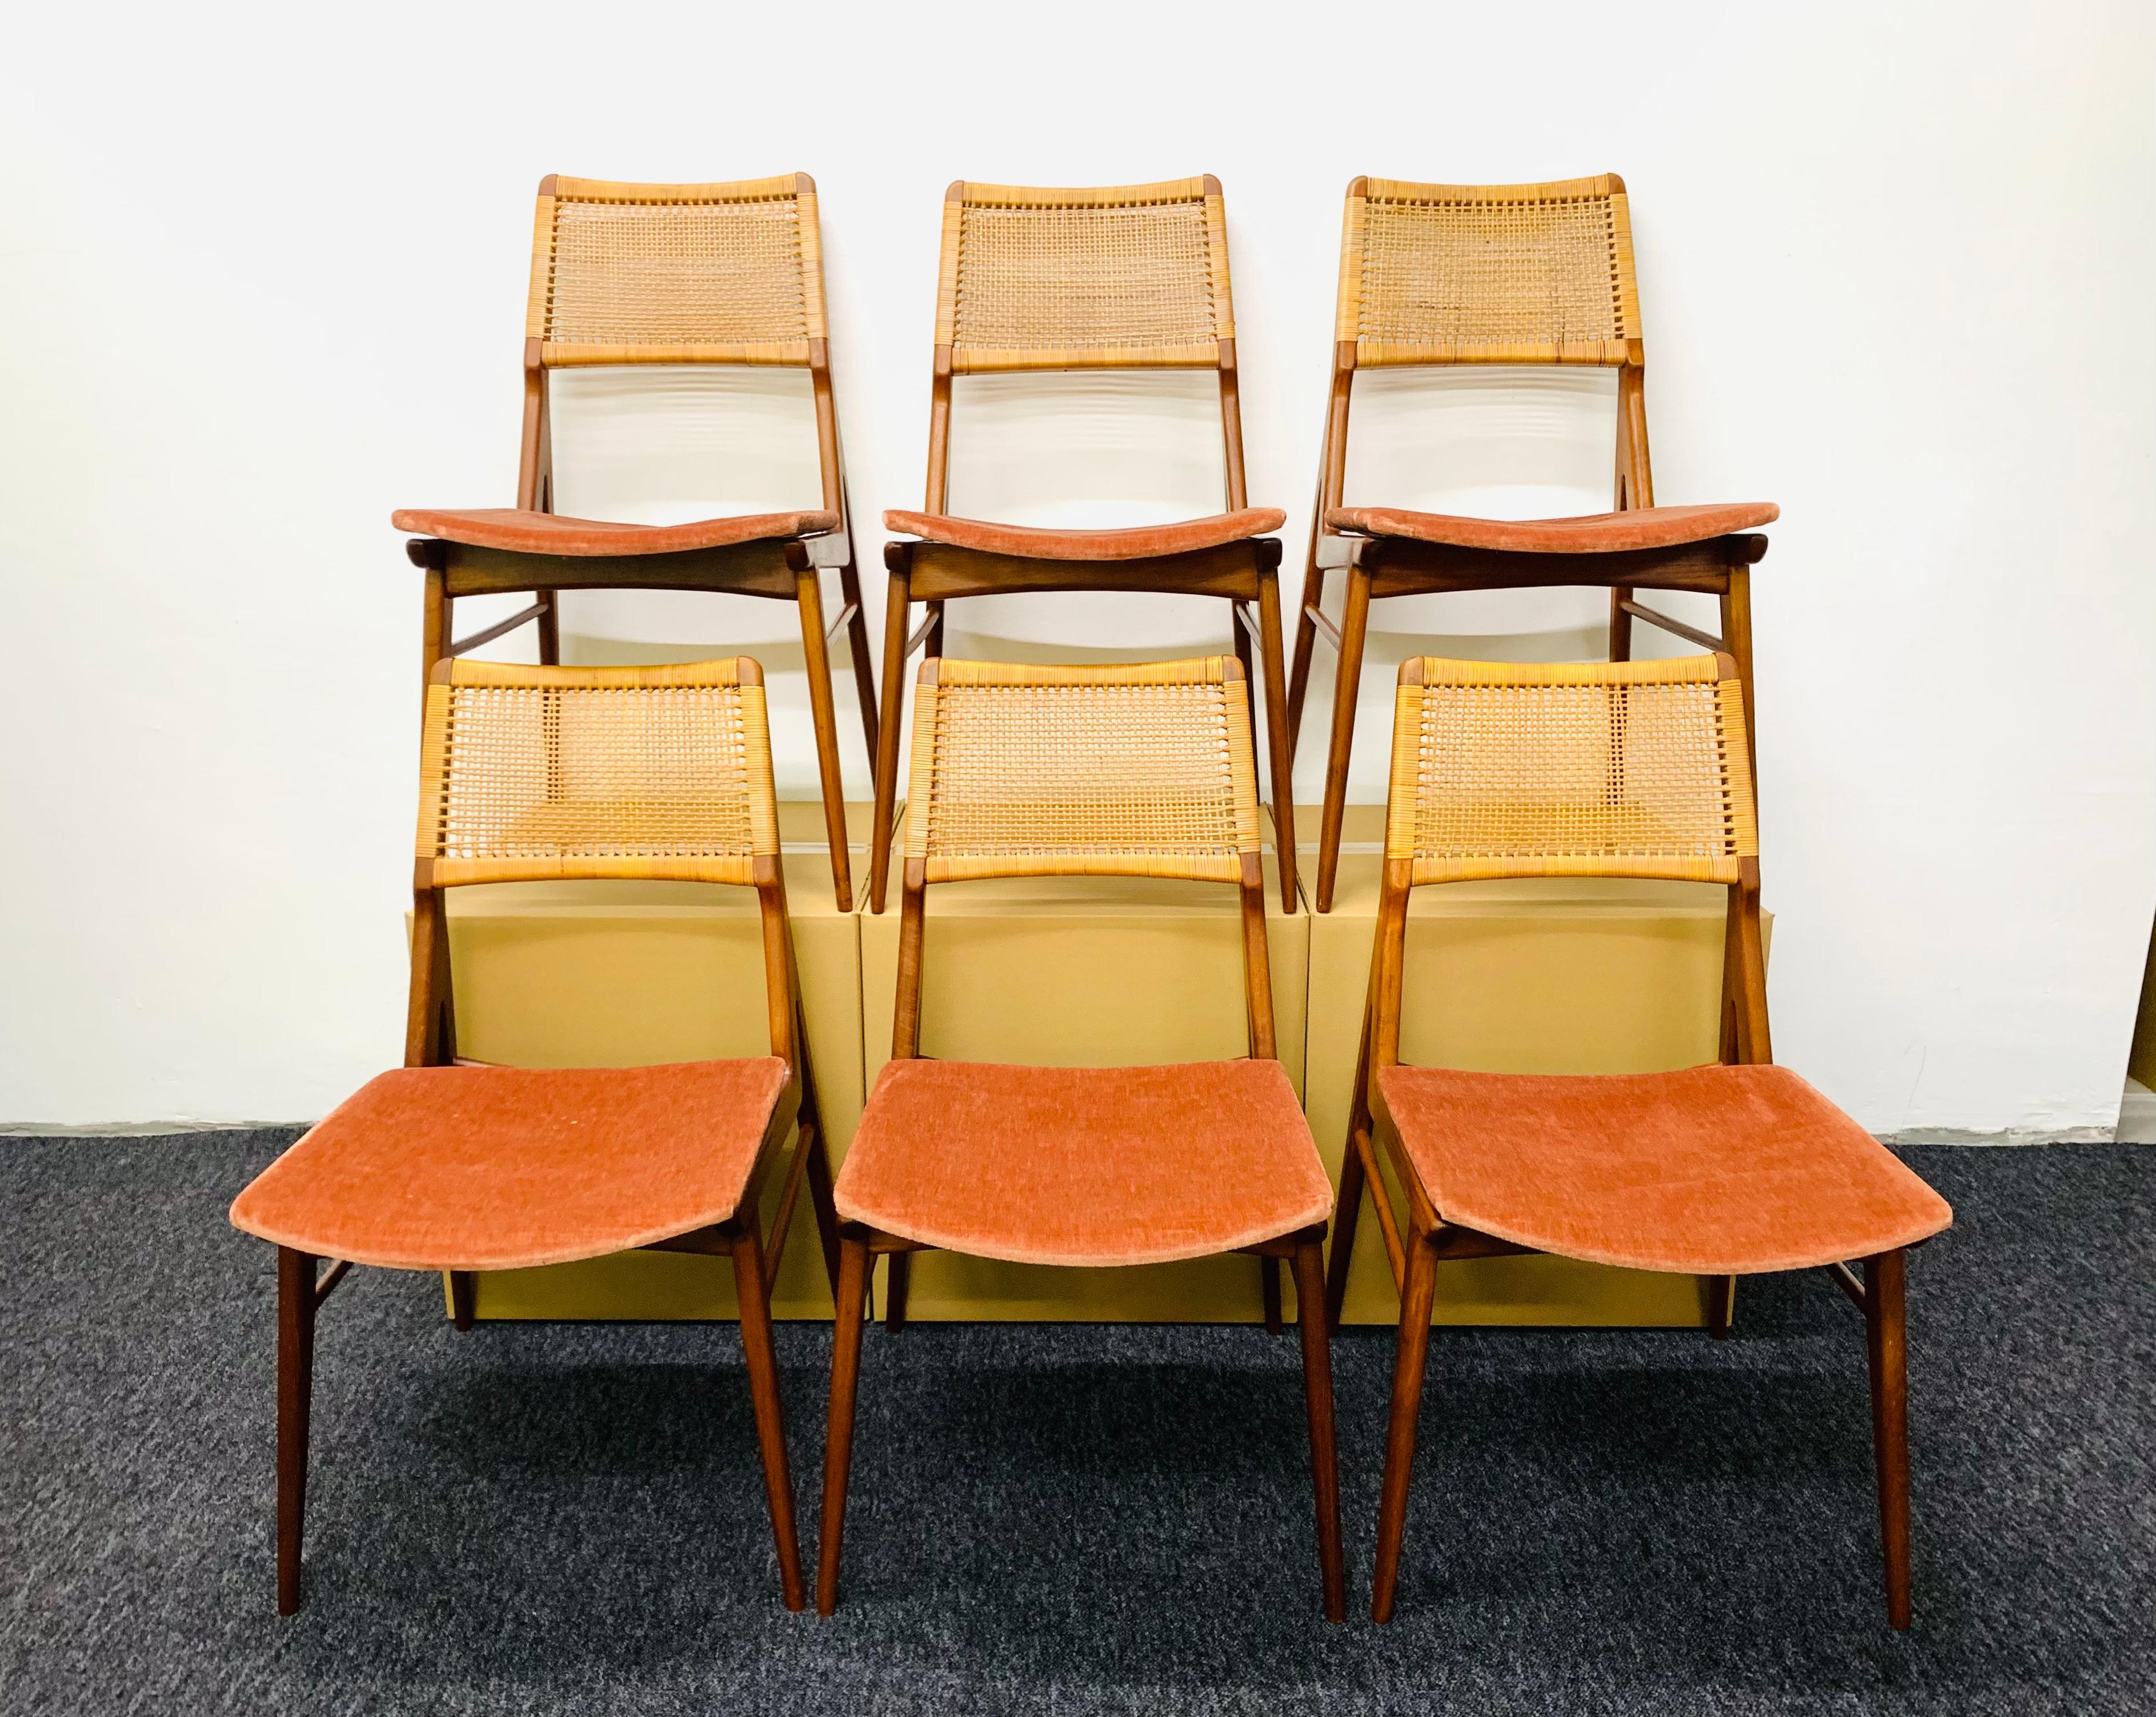 Des chaises en teck d'une beauté extraordinaire, datant des années 1950.
Un travail très délicat, avec une grande attention aux détails.
Le tressage du rotin rend les chaises très spéciales.
Une merveilleuse addition à n'importe quelle